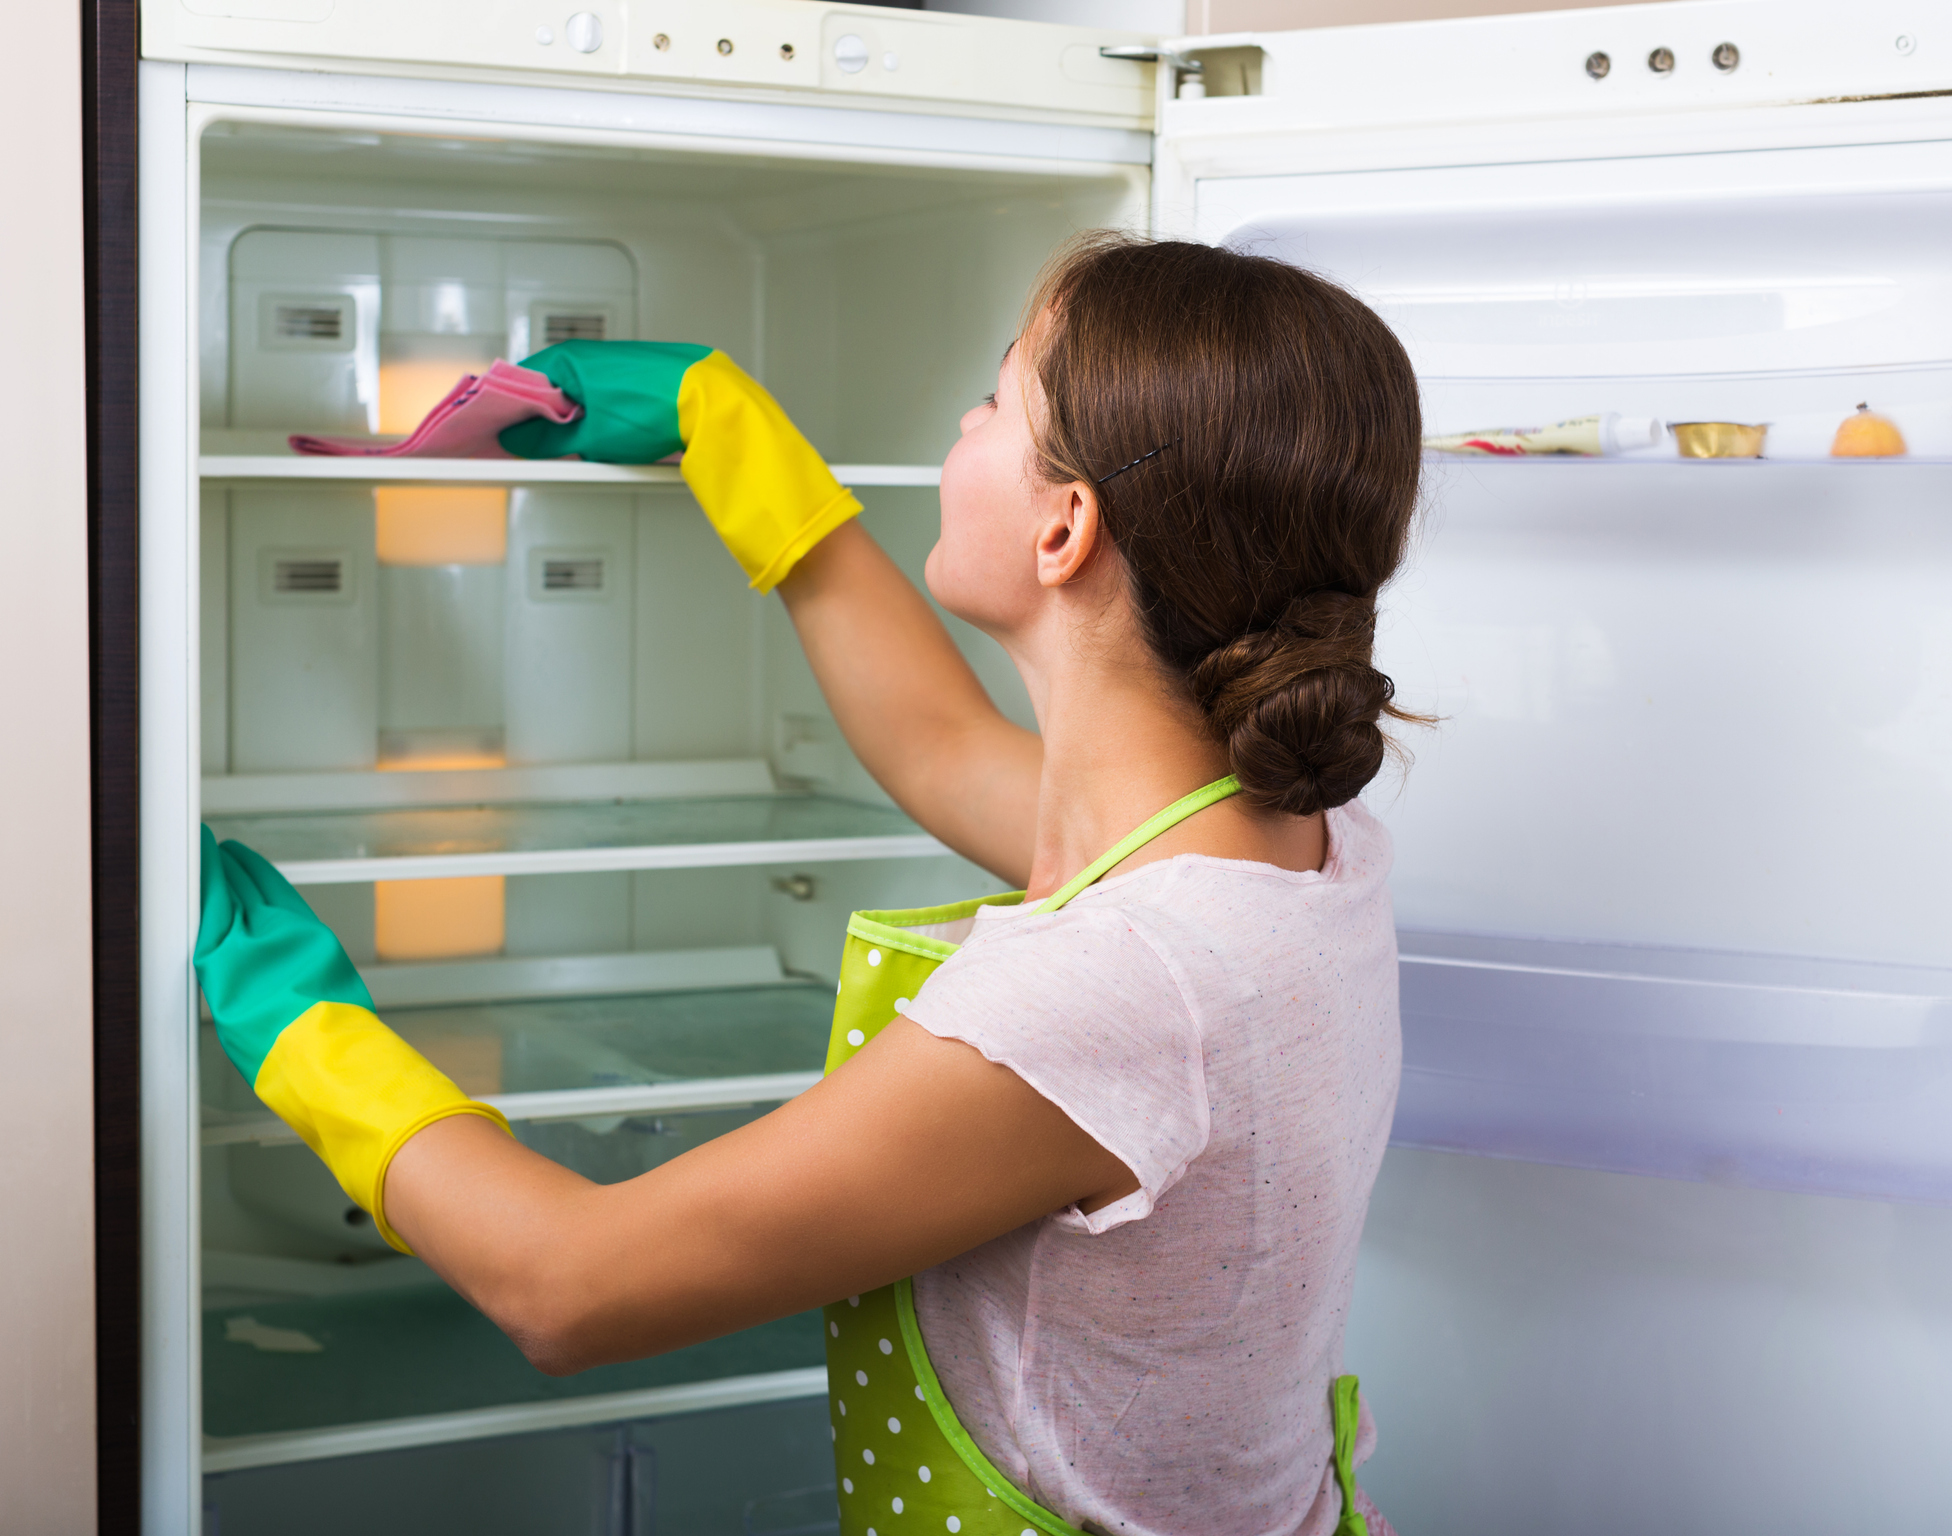 Почистете хладилника<br />
 <br />
Имаме предвид основно почистване. Обикновено, когато нещо се разлее в хладилника, забърсваме, но сега е момент да размразим и почистим хубаво мястото, където ще съхраняваме всички вкусотии около празниците, а те ще се повечко, признаваме.